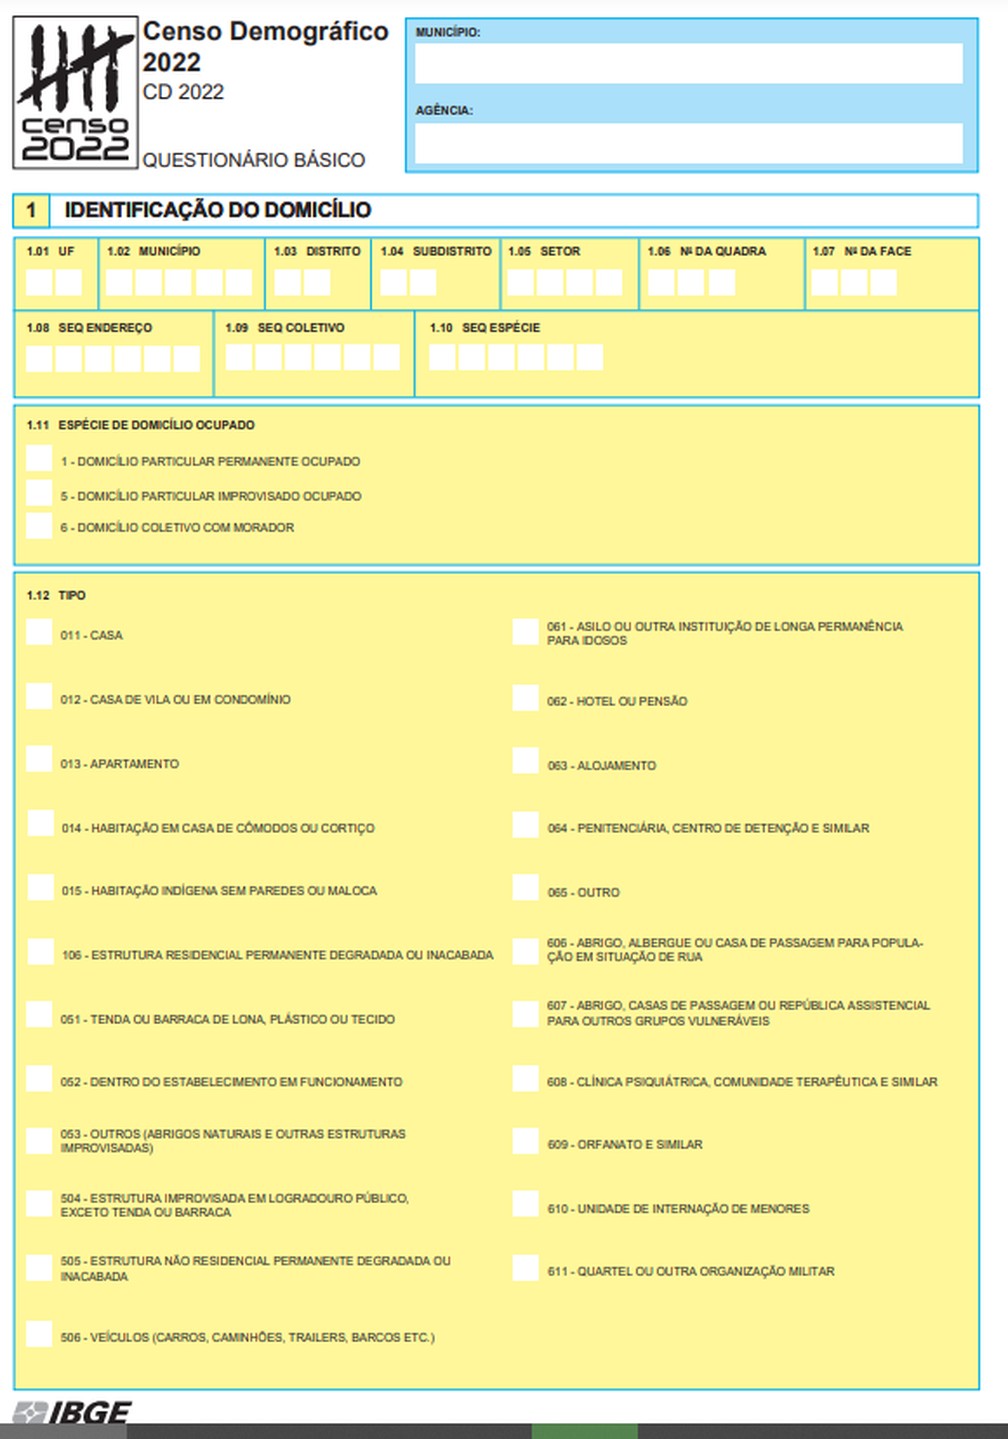 Imagem da página inicial do questionário básico do Censo 2022 — Foto: Reprodução/IBGE